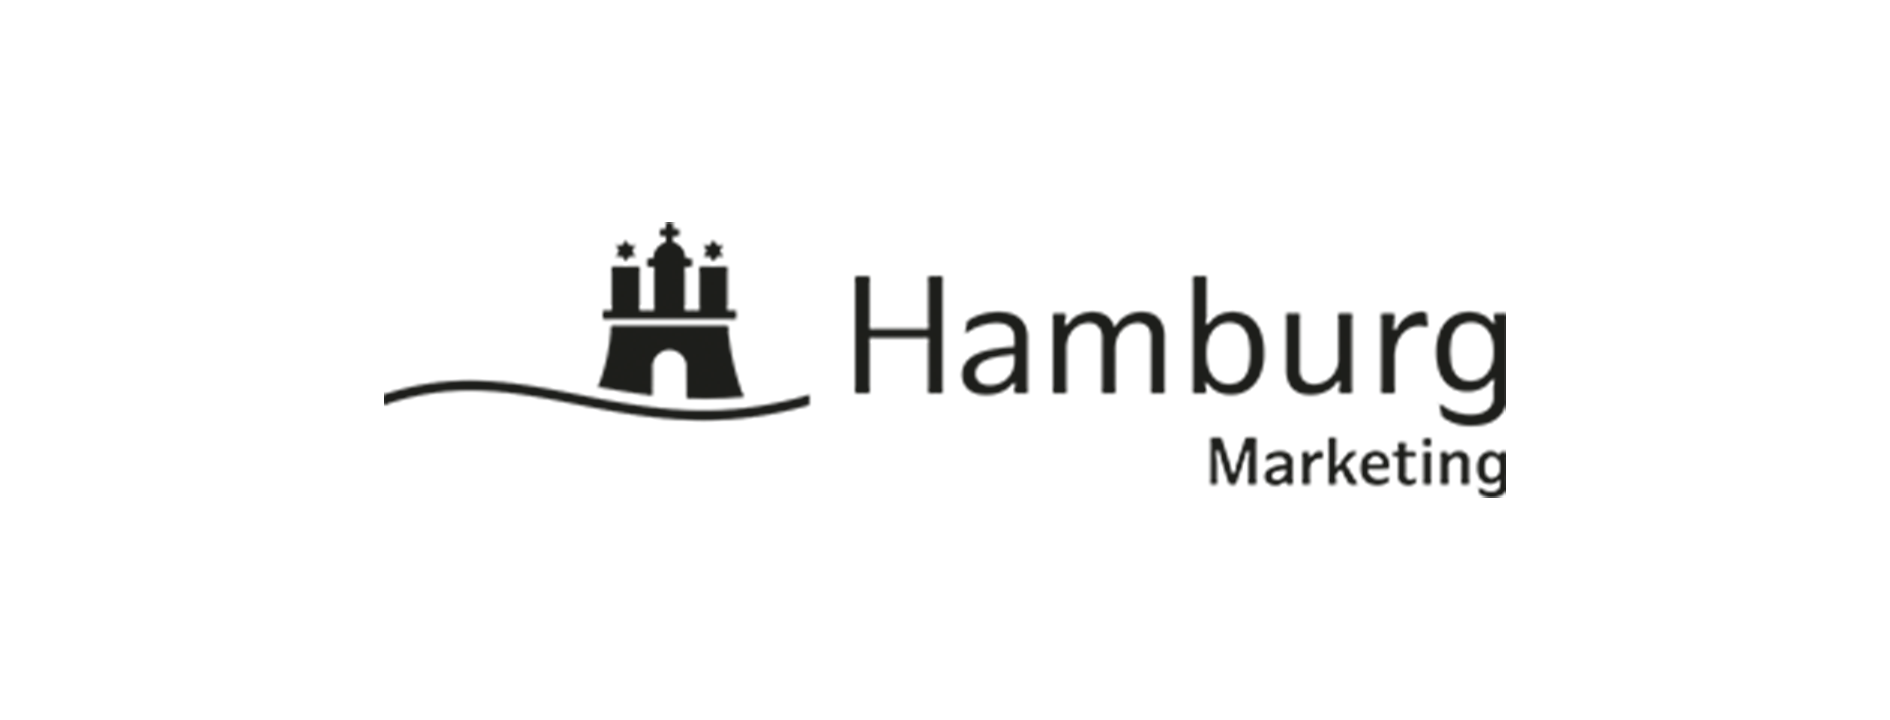 Hamburg logo2 3x 3x